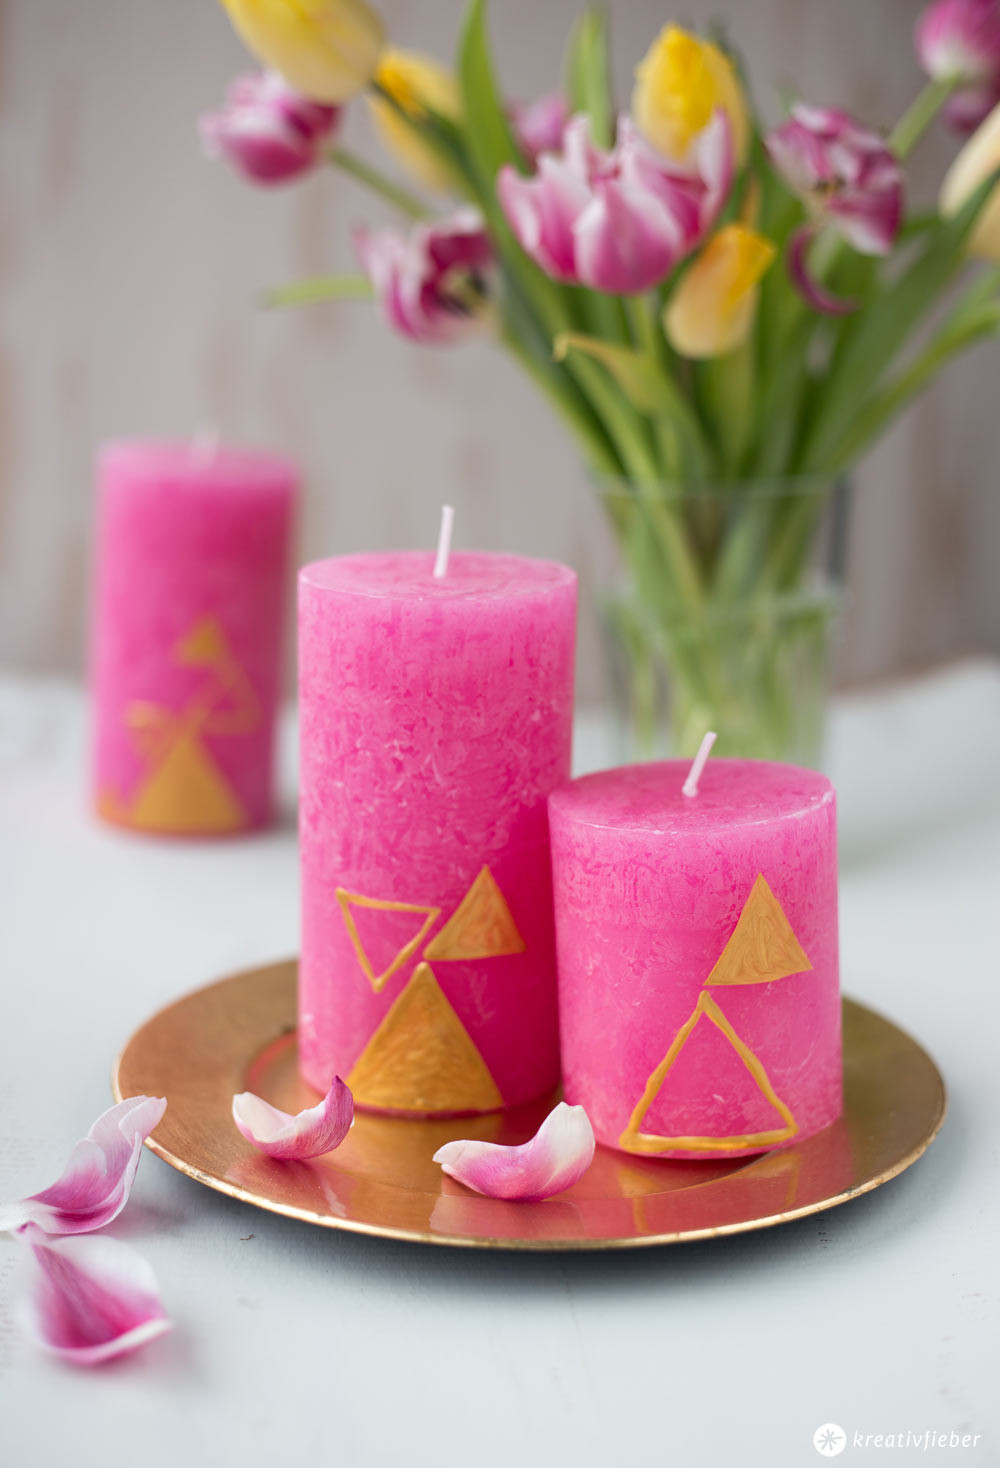 Kerzen Geschenke
 DIY Kerzen gestalten 3 Varianten für einfache